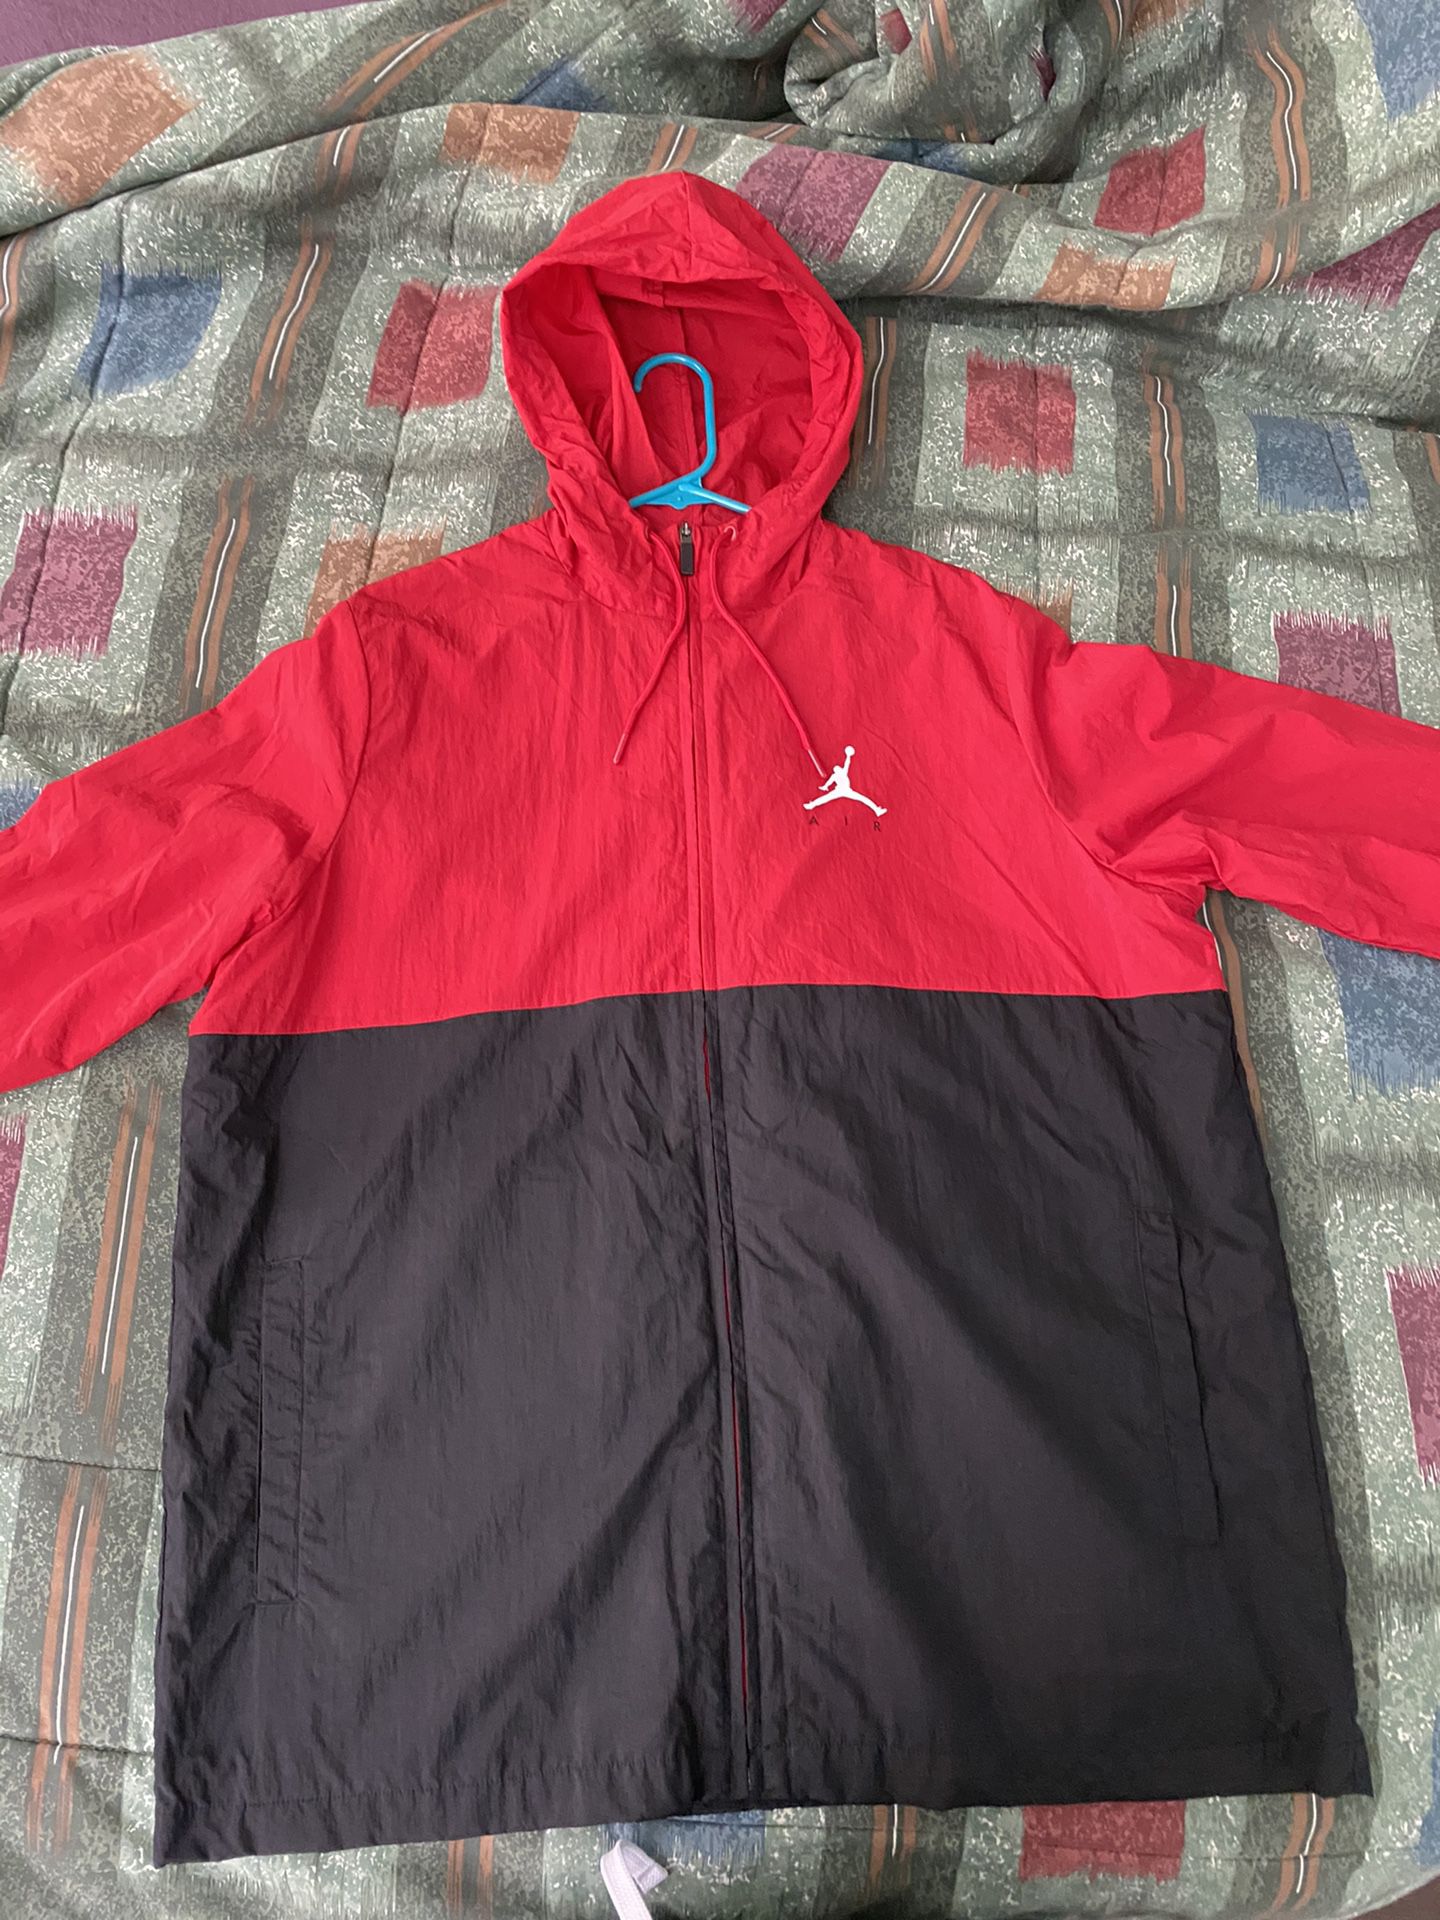 Nike Air Jordan windbreaker jacket